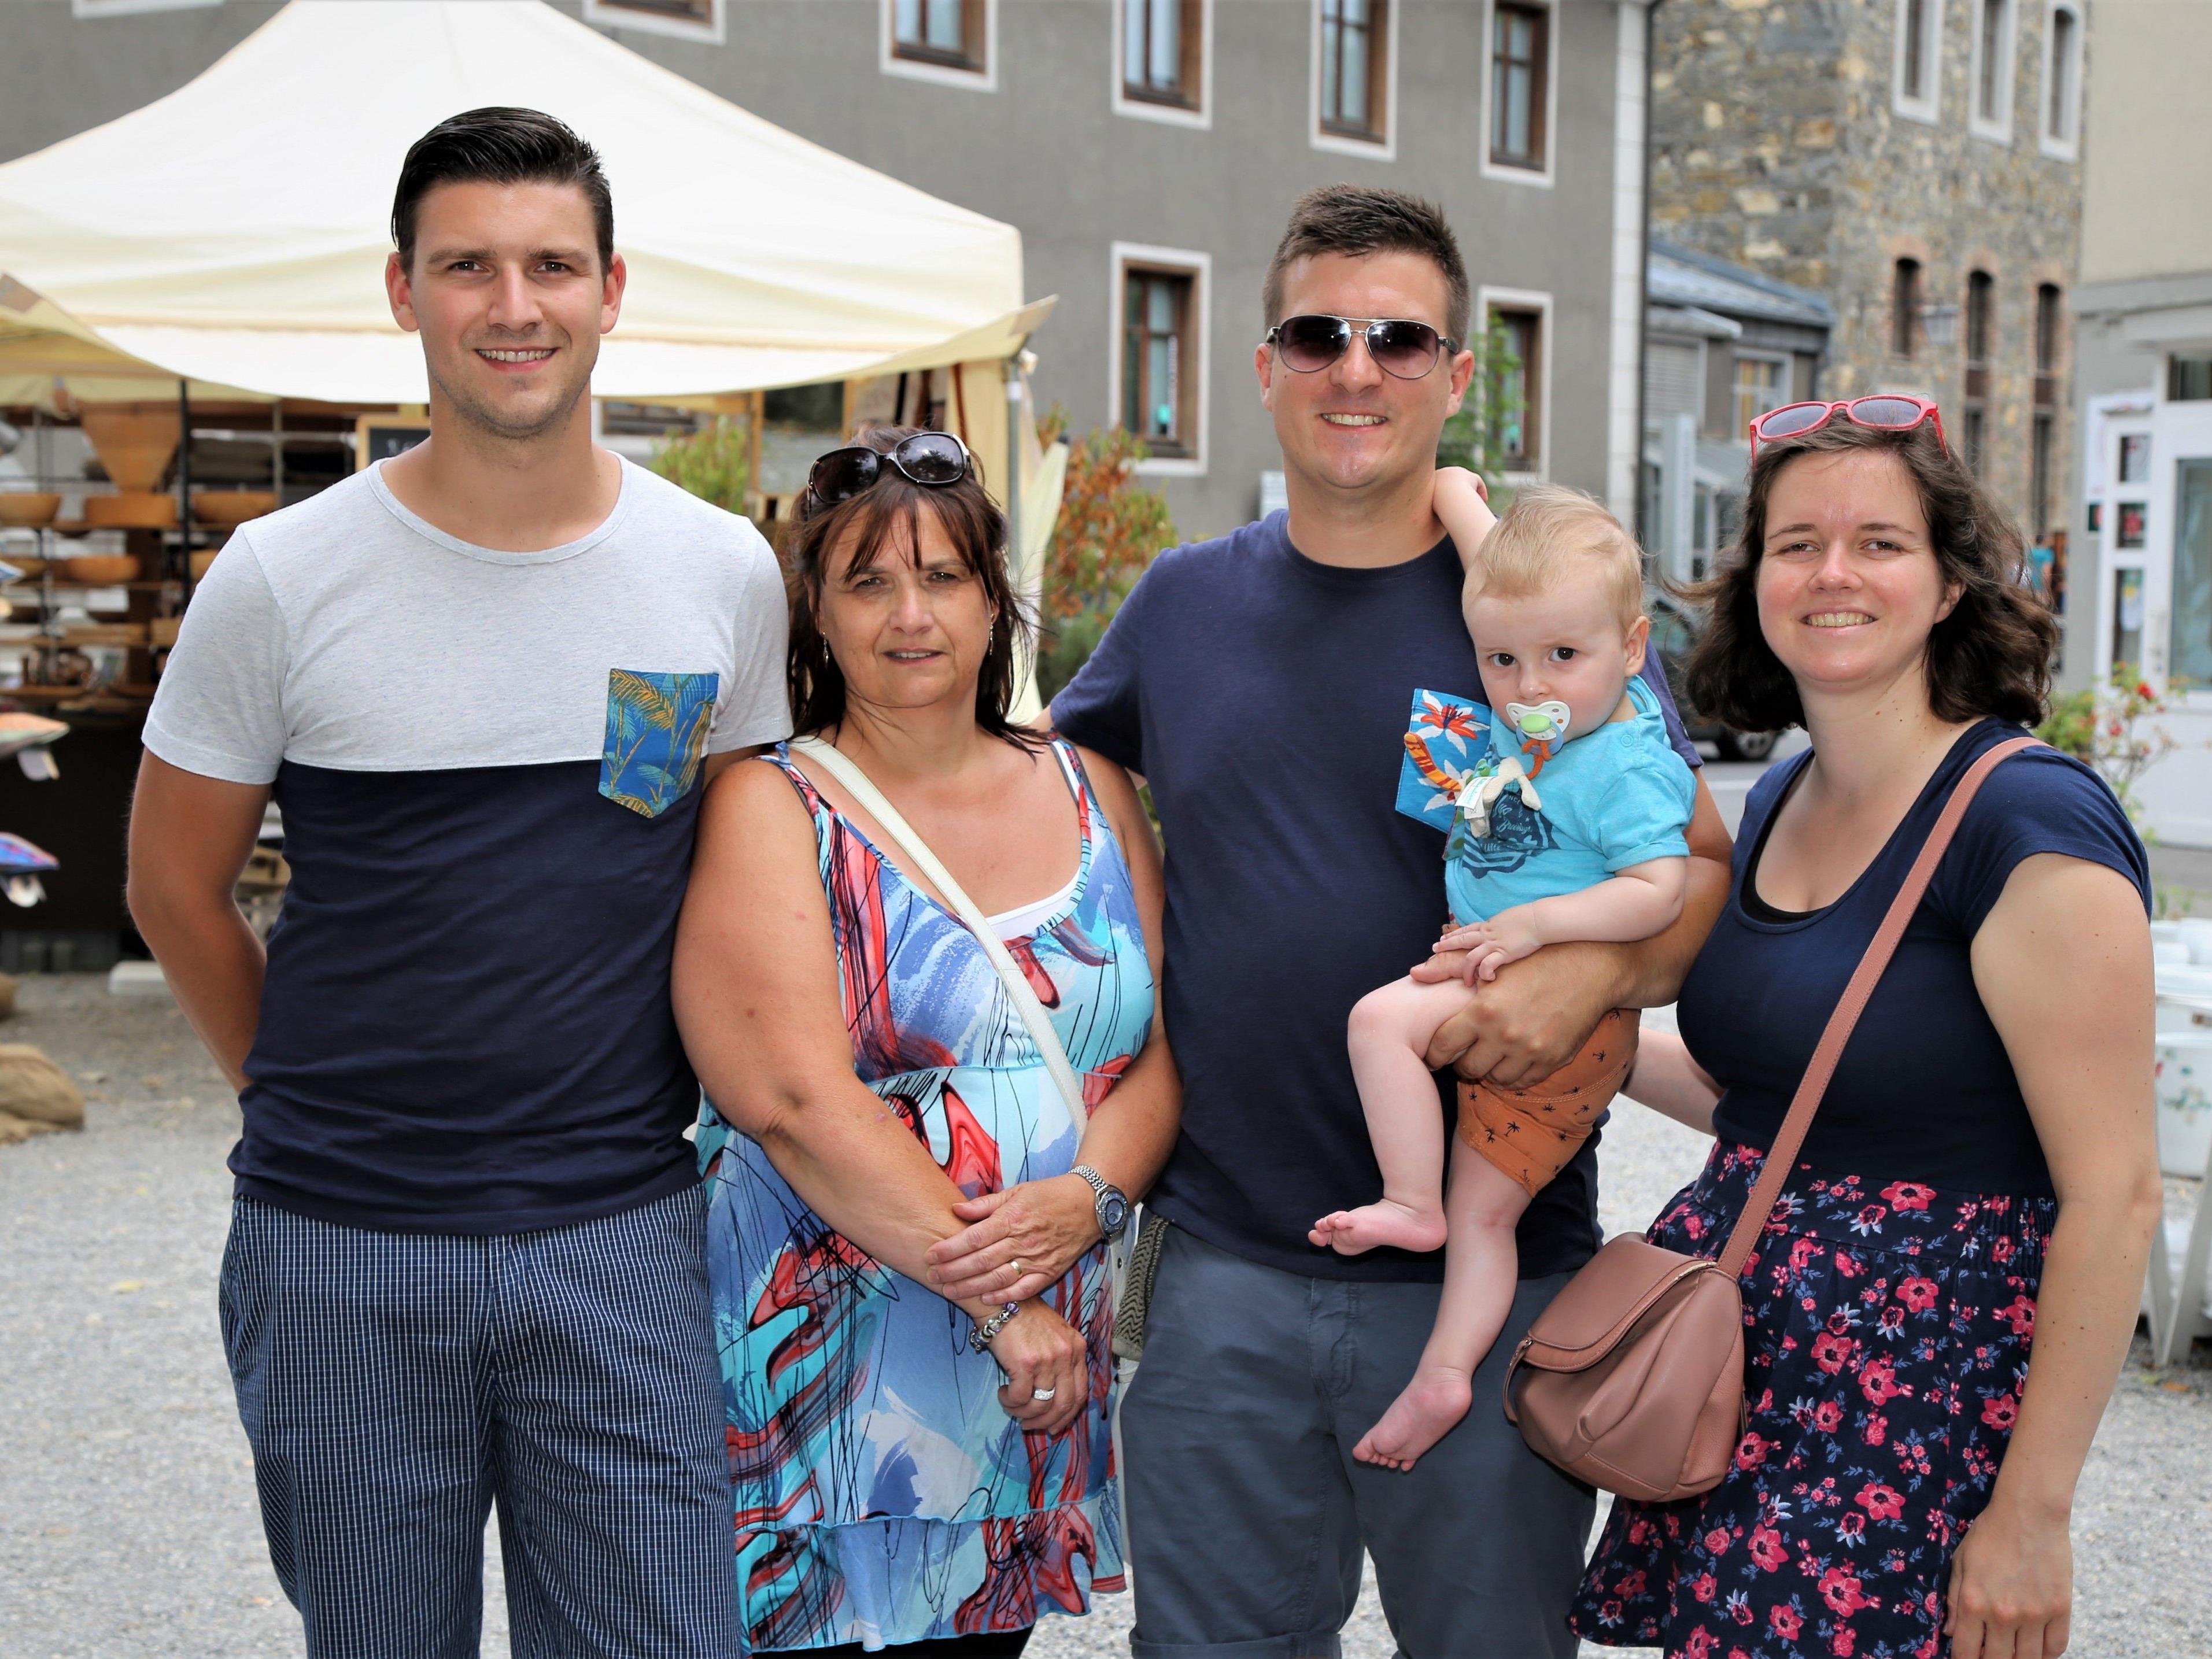 Jens, Carla, Christoph, Cas und Elien waren ein paar Tage in Feldkirch und besuchten den Kunsthandwerksmarkt.